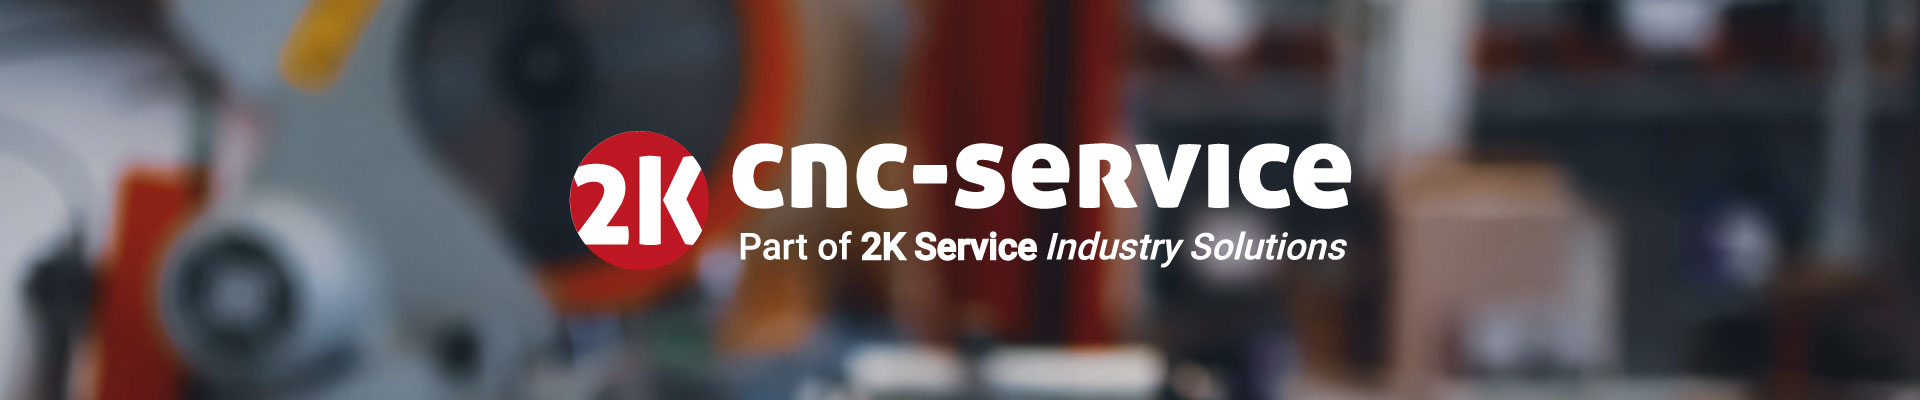 2k CNC-Service der Experte an der Werkzeugmaschine